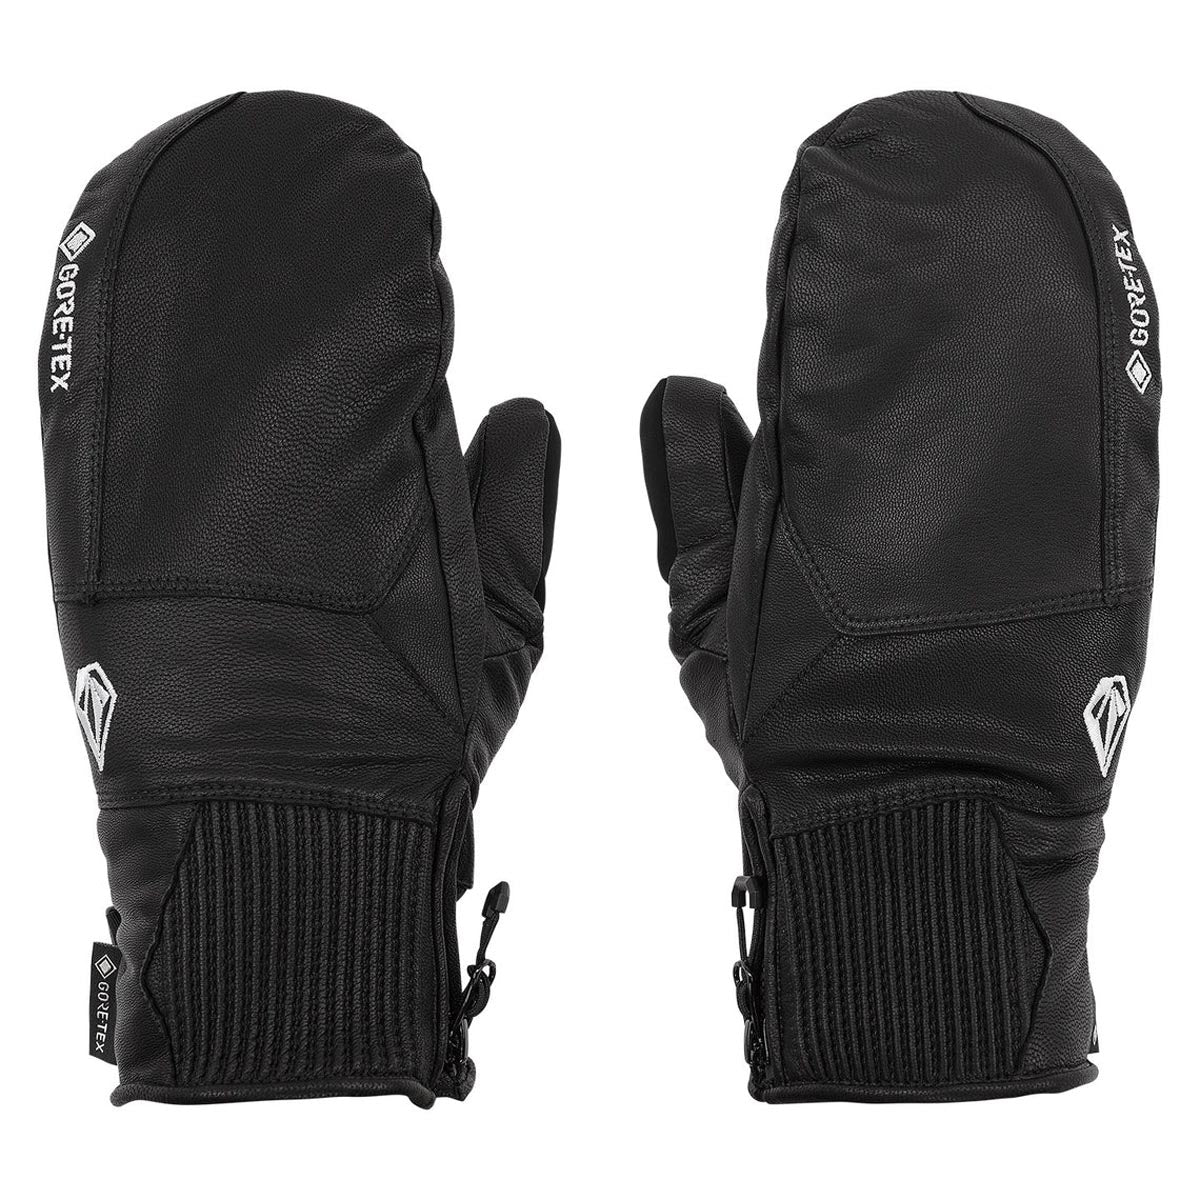 Volcom Service Gore-tex Mitt Snowboard Gloves - Black image 1